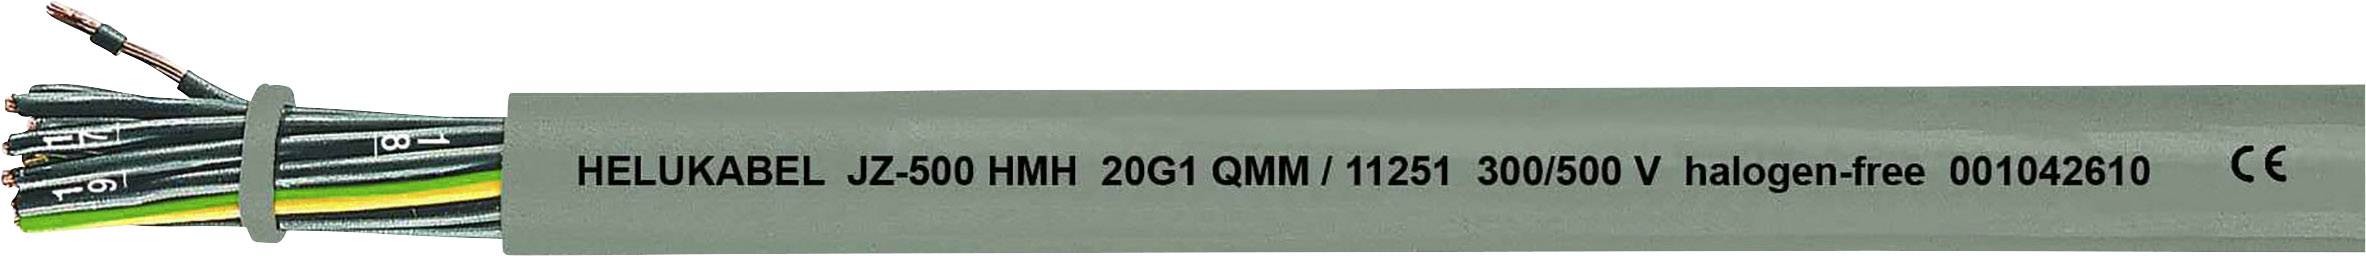 HELUKABEL JZ-500 HMH Steuerleitung 4 G 0.75 mm² Grau 11223-1000 1000 m